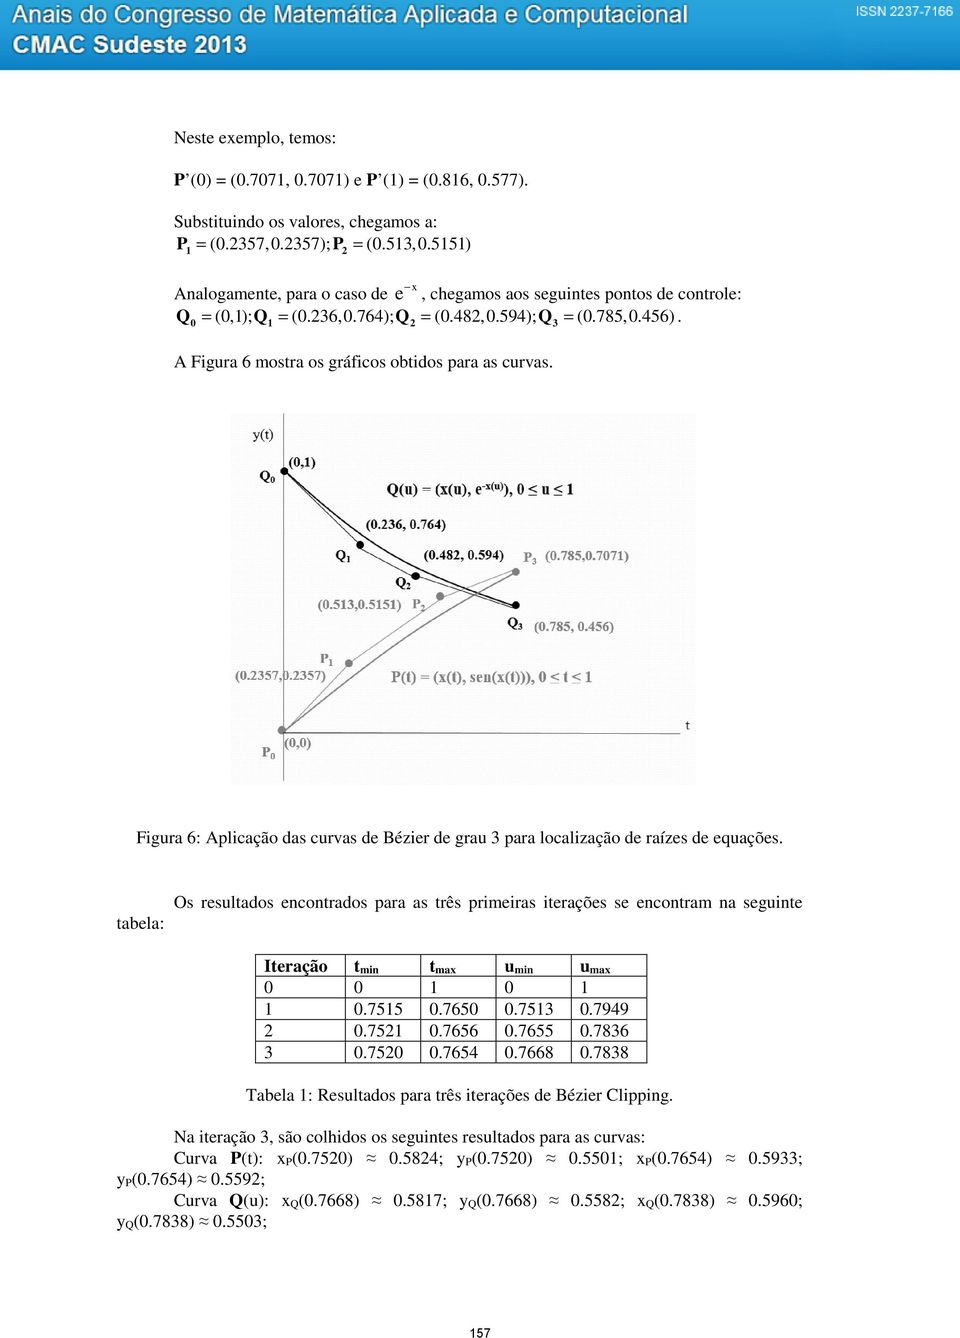 Fgura 6: Aplcação das curvas de Bézer de grau 3 para localzação de raízes de equações.